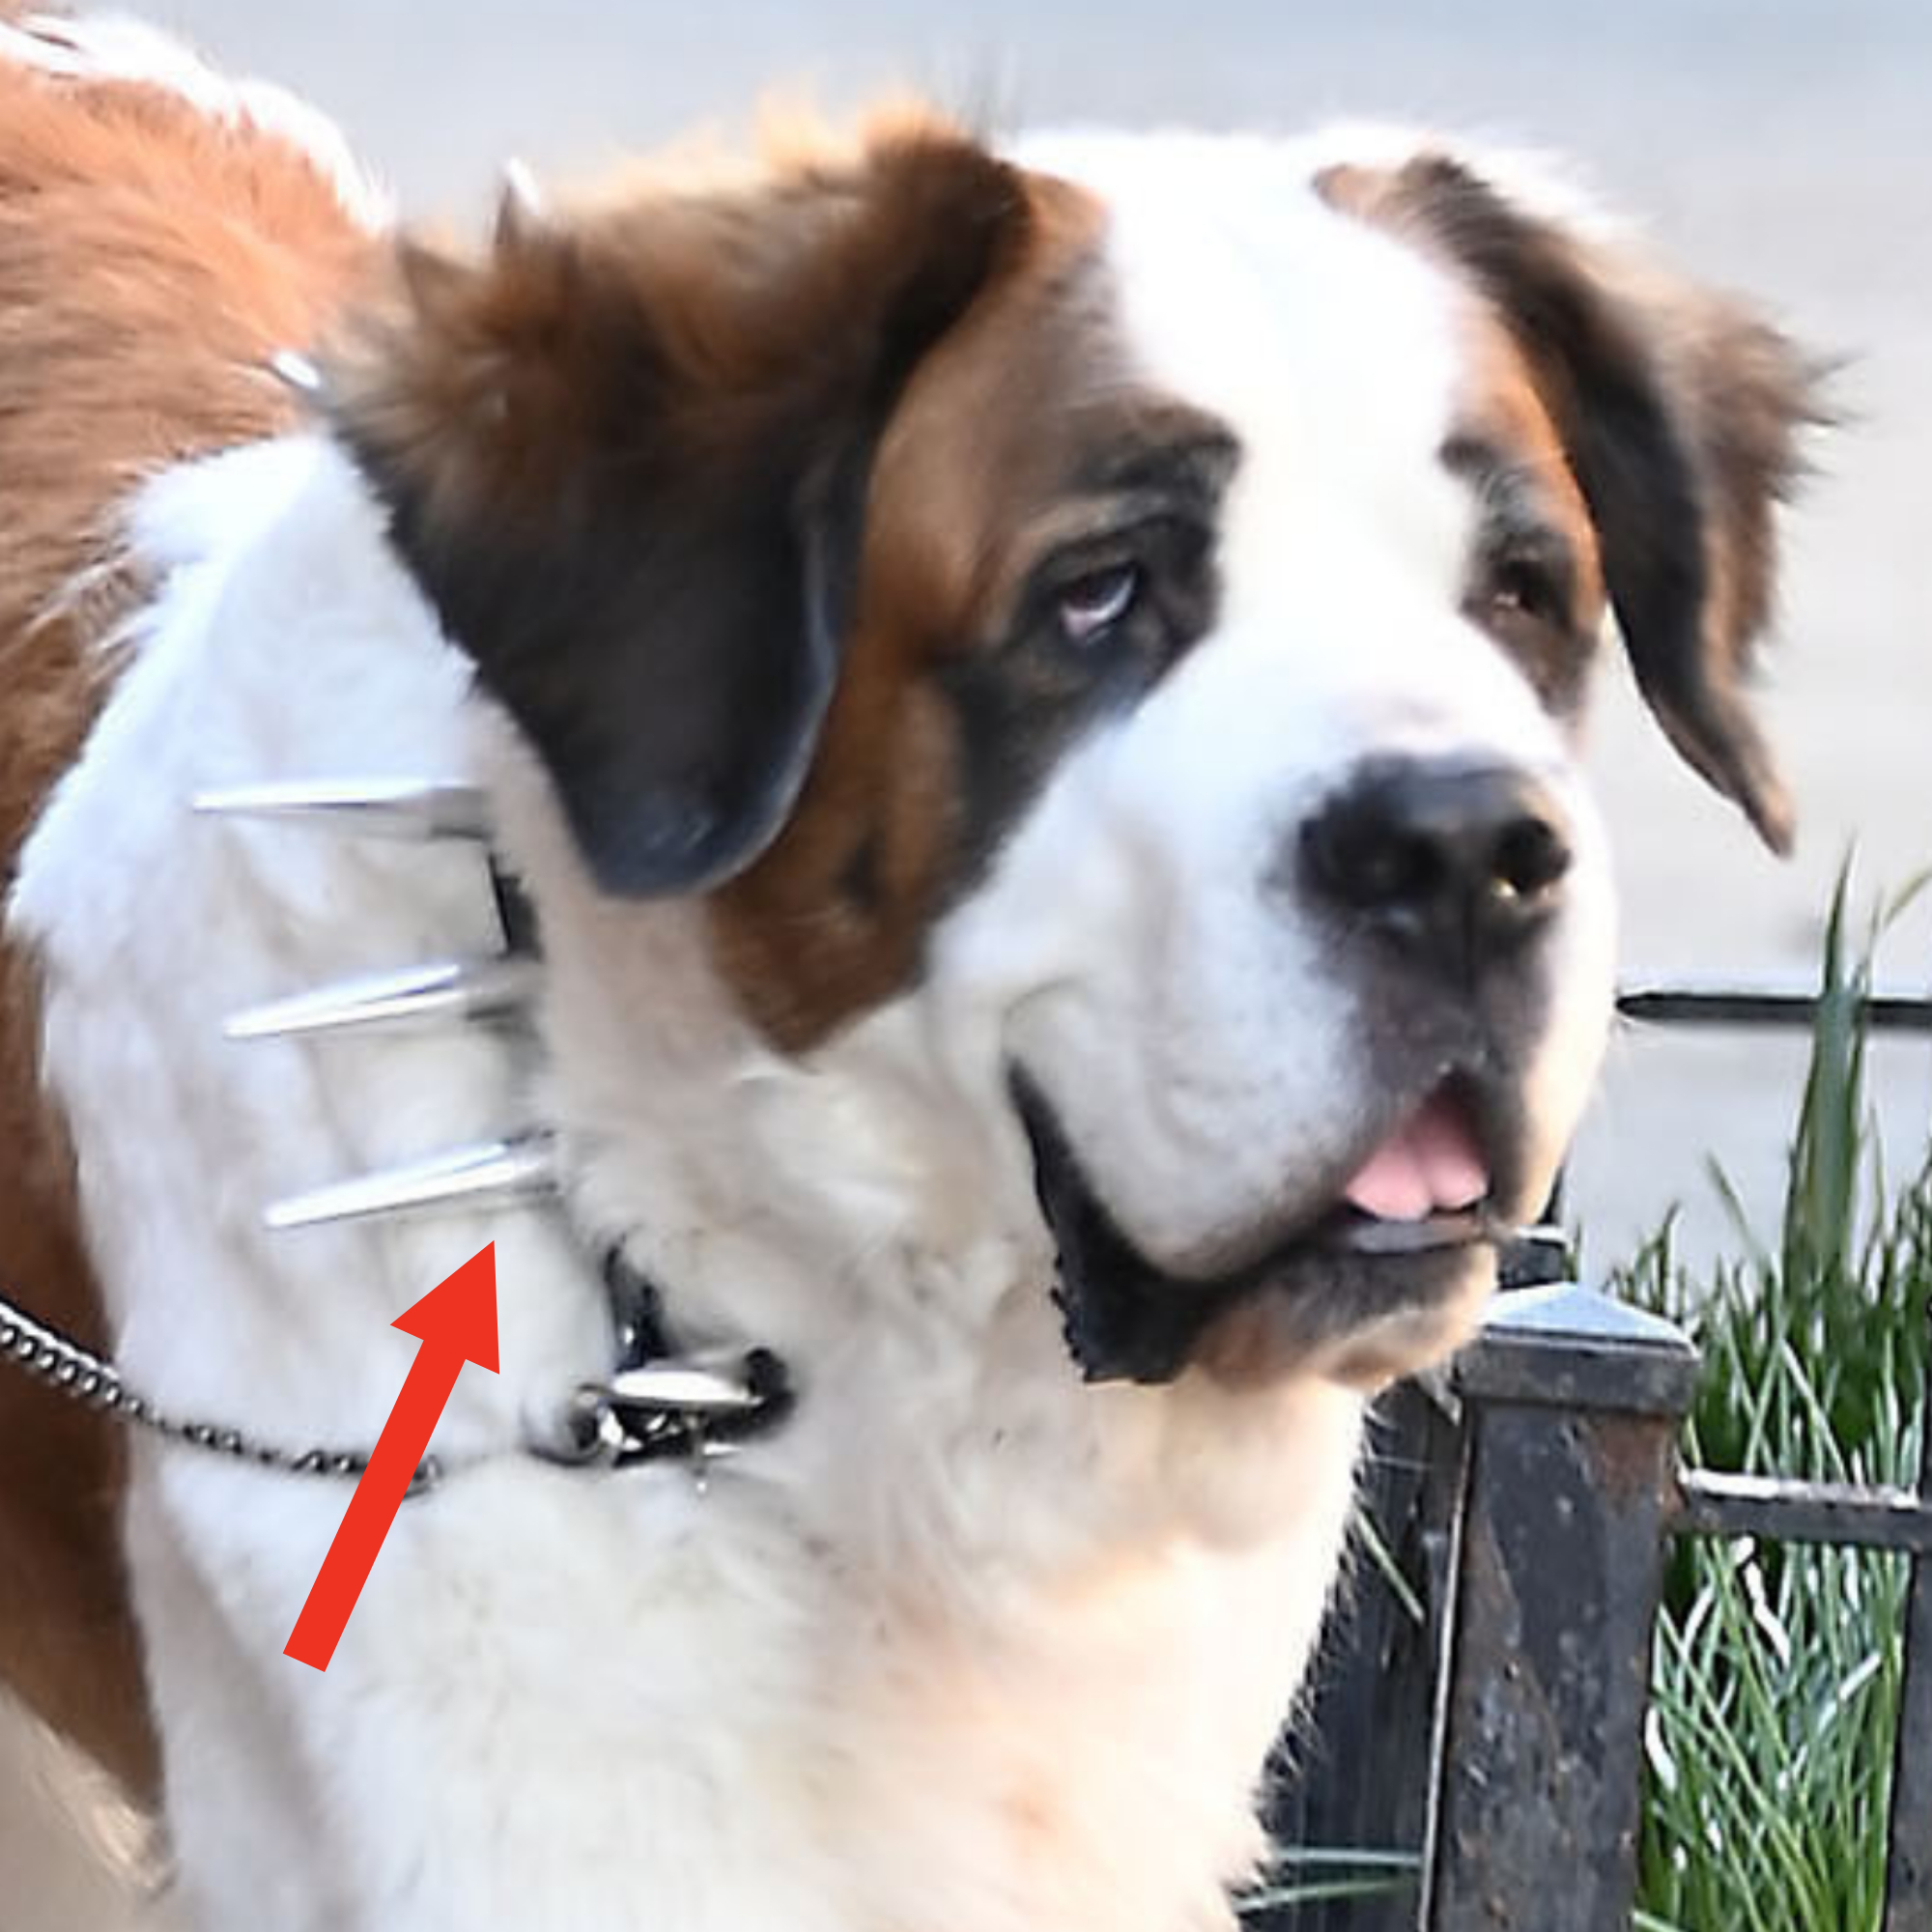 Saint Bernard dog with a spiked collar on a leash